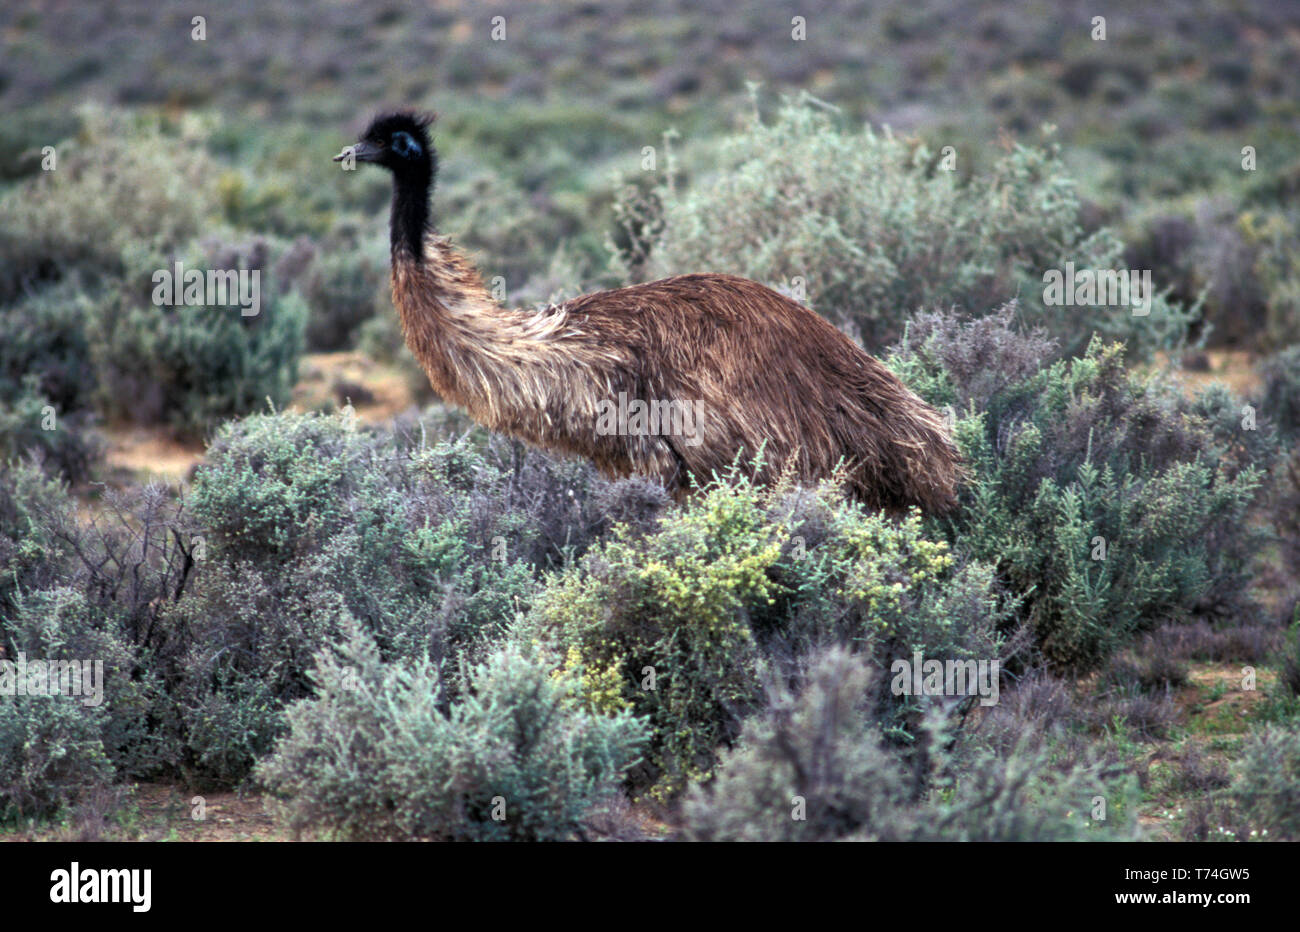 EMU (DROMAIUS NOVAEHOLLANDIAE) WANDERING THROUGH THE SCRUB, AUSTRALIA Stock Photo